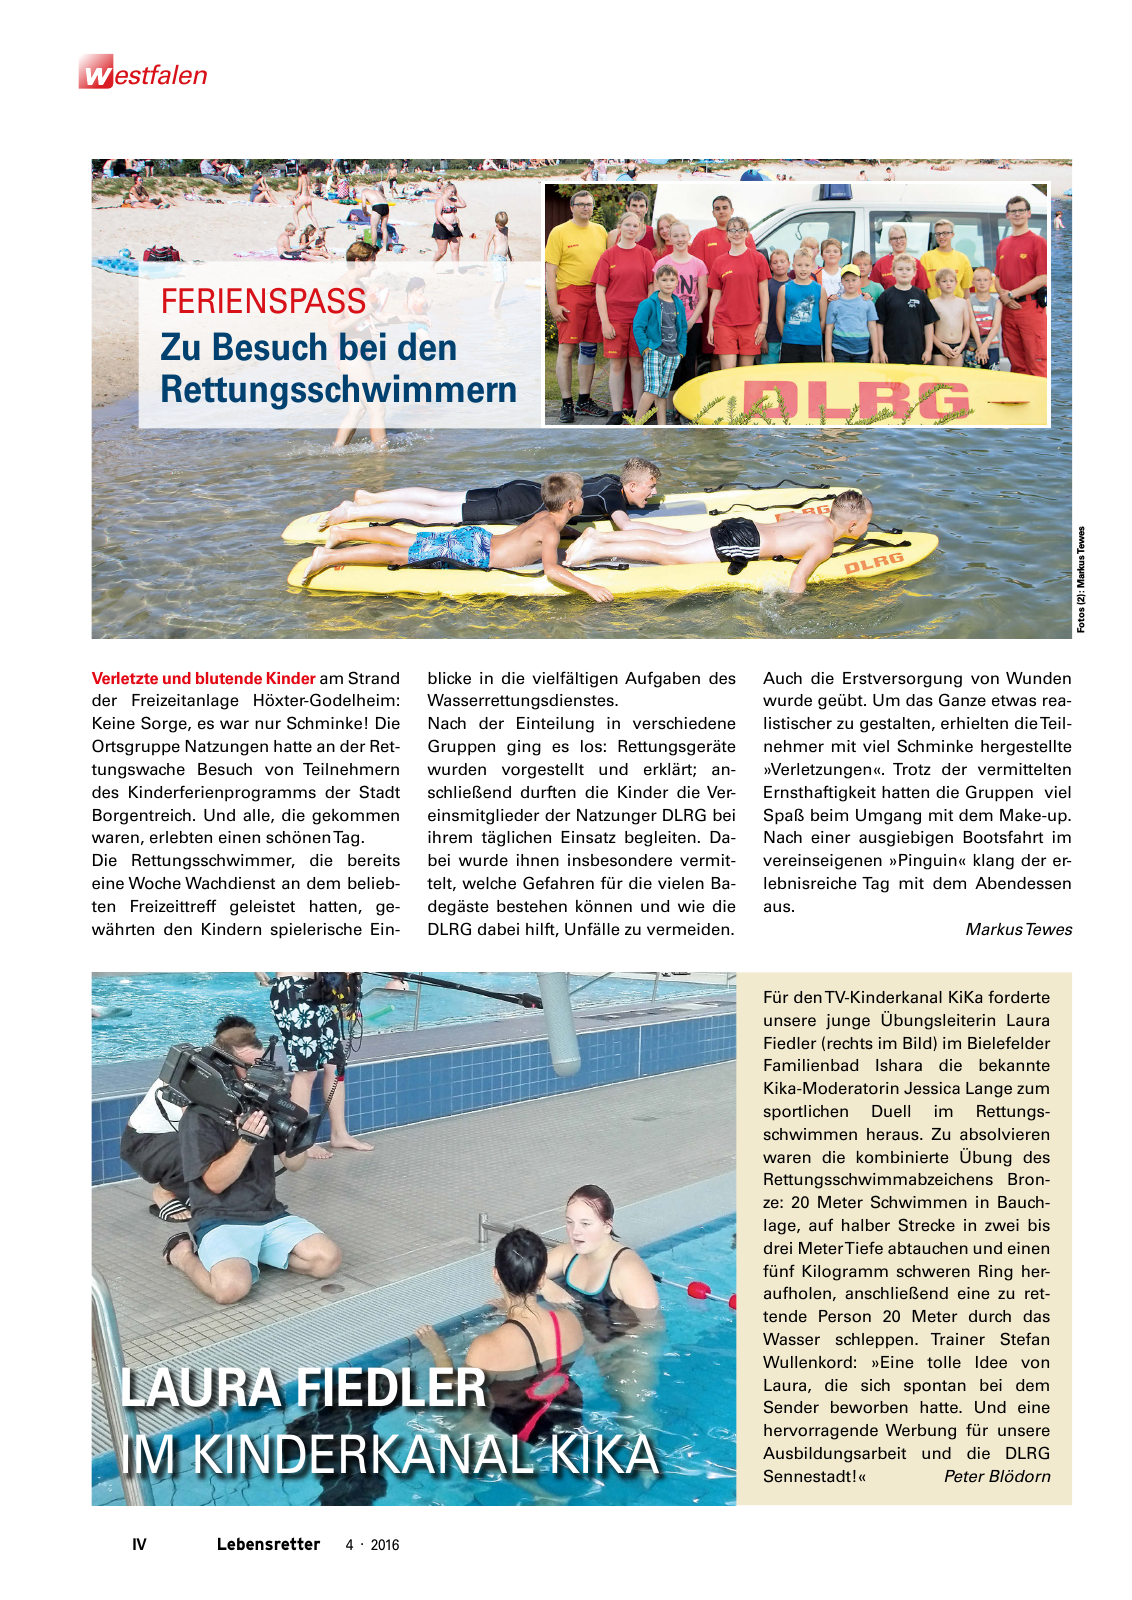 Vorschau Lebensretter 4/2016 - Regionalausgabe Westfalen Seite 6